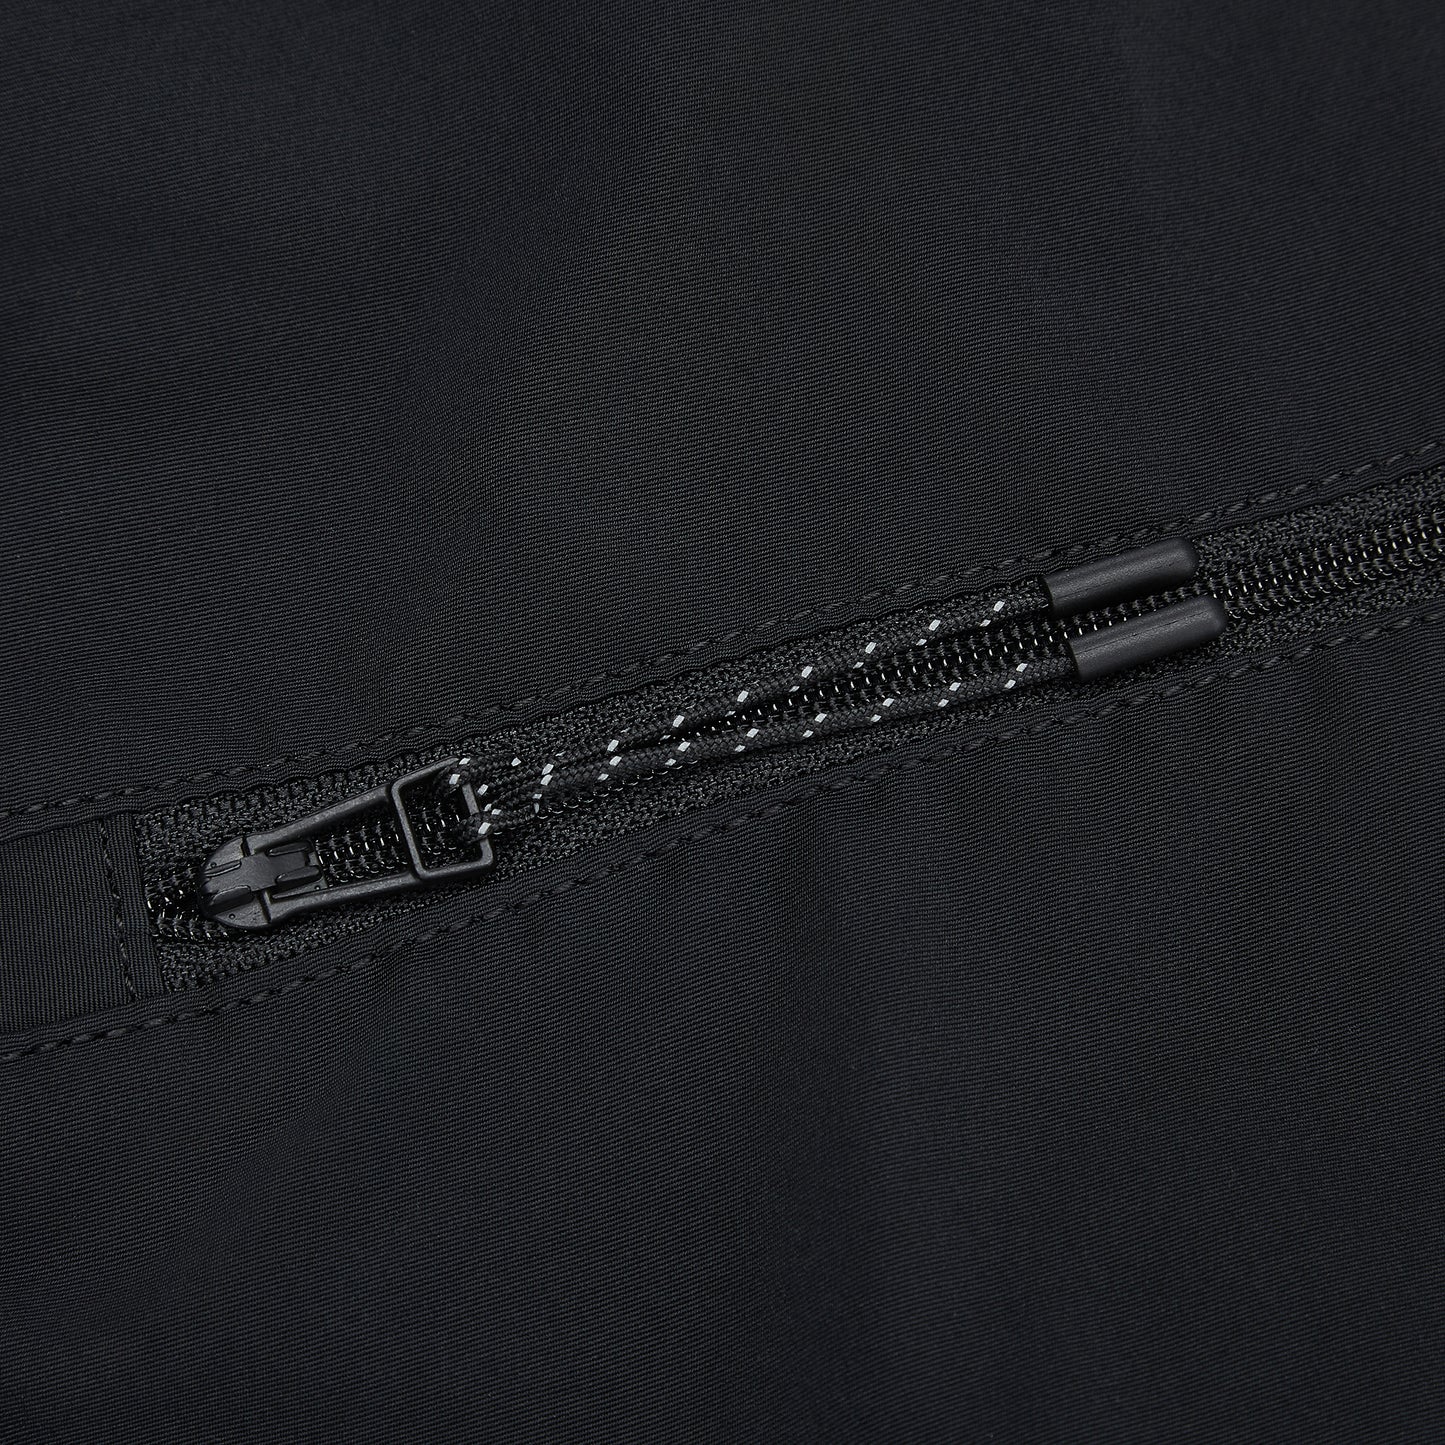 zip detail on black bag